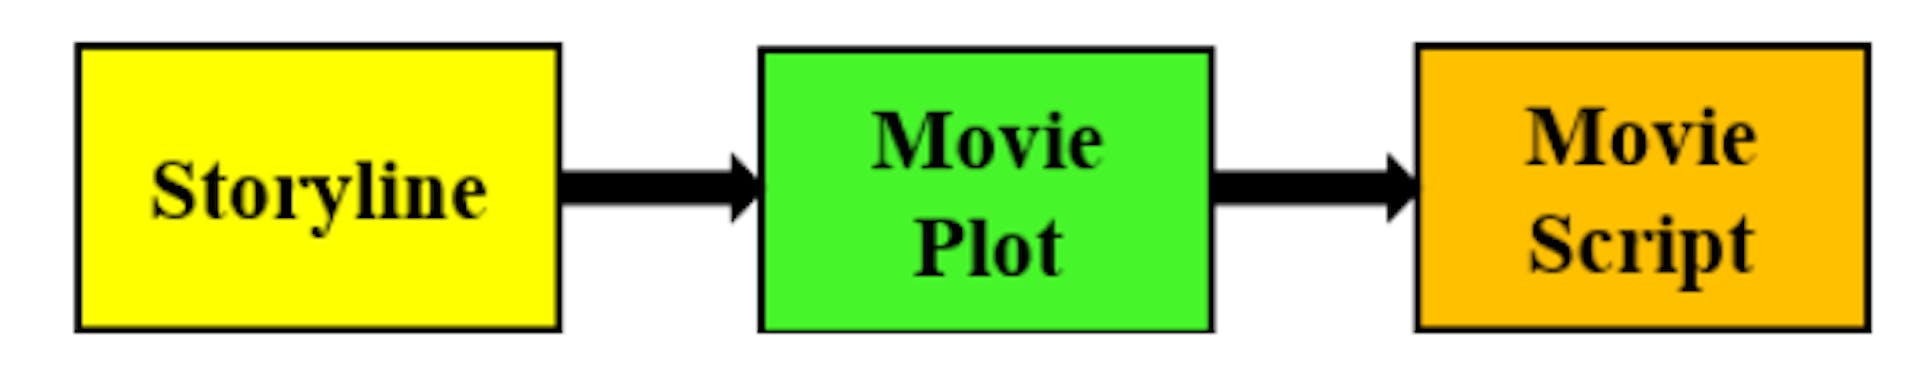 Abbildung 1: Der Denkprozess, den ein Drehbuchautor beim Schreiben eines Filmskripts durchläuft. Aus einer Idee (Handlungsstrang) entsteht ein Plot, der dann in ein Filmskript umgesetzt wird.